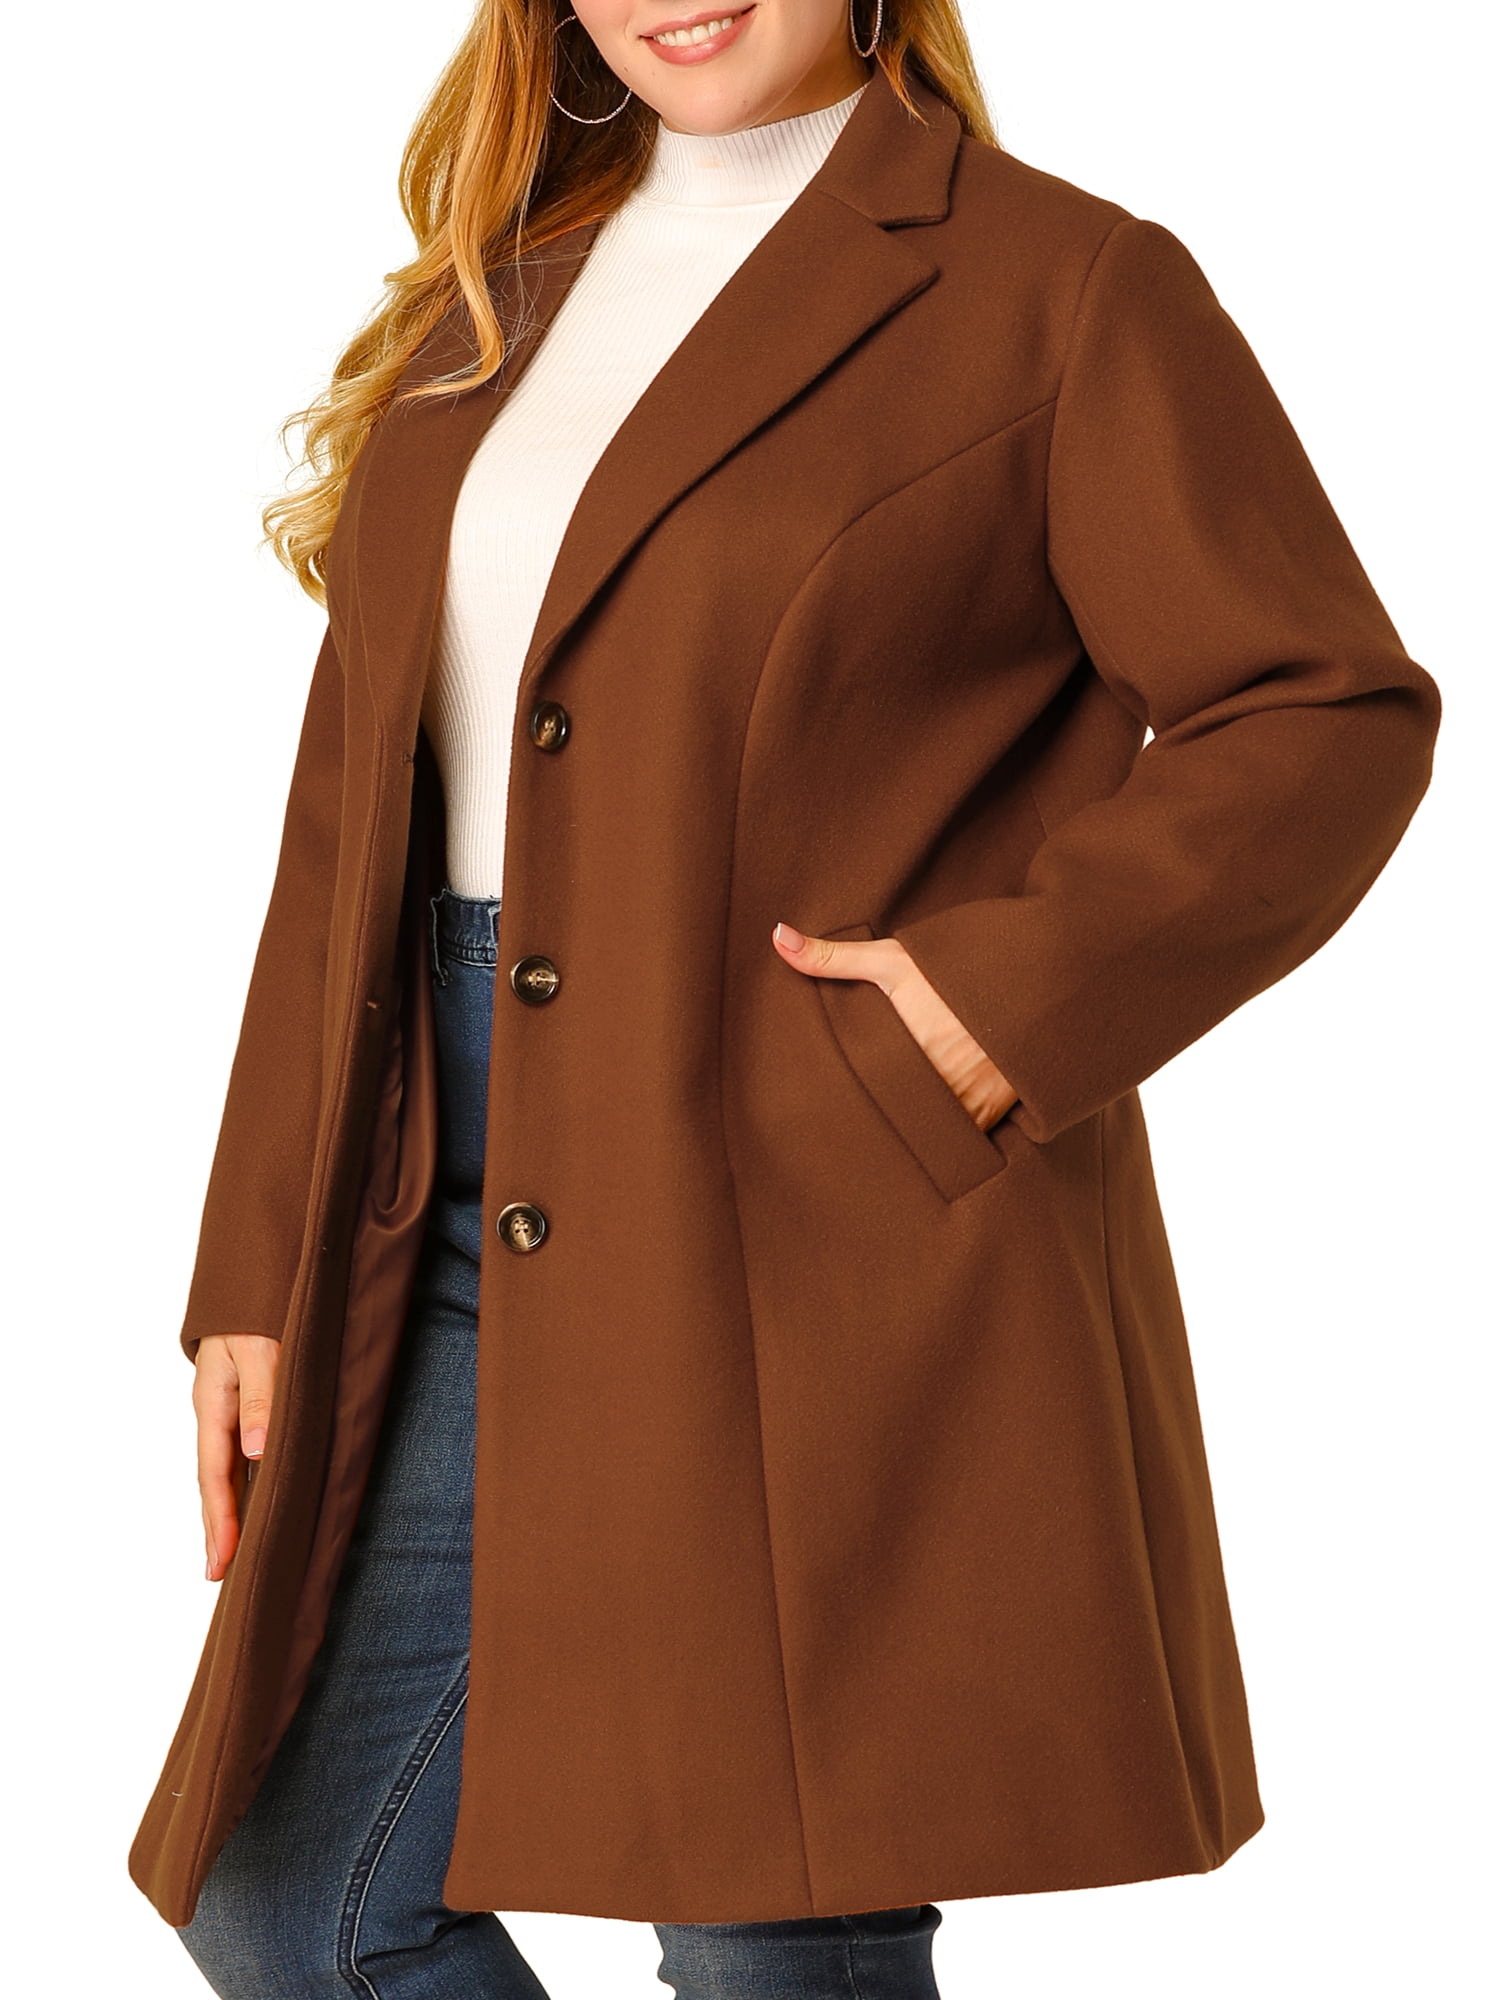 Unique Bargains - Women's Plus Size Coats Elegant Notched Lapel Single